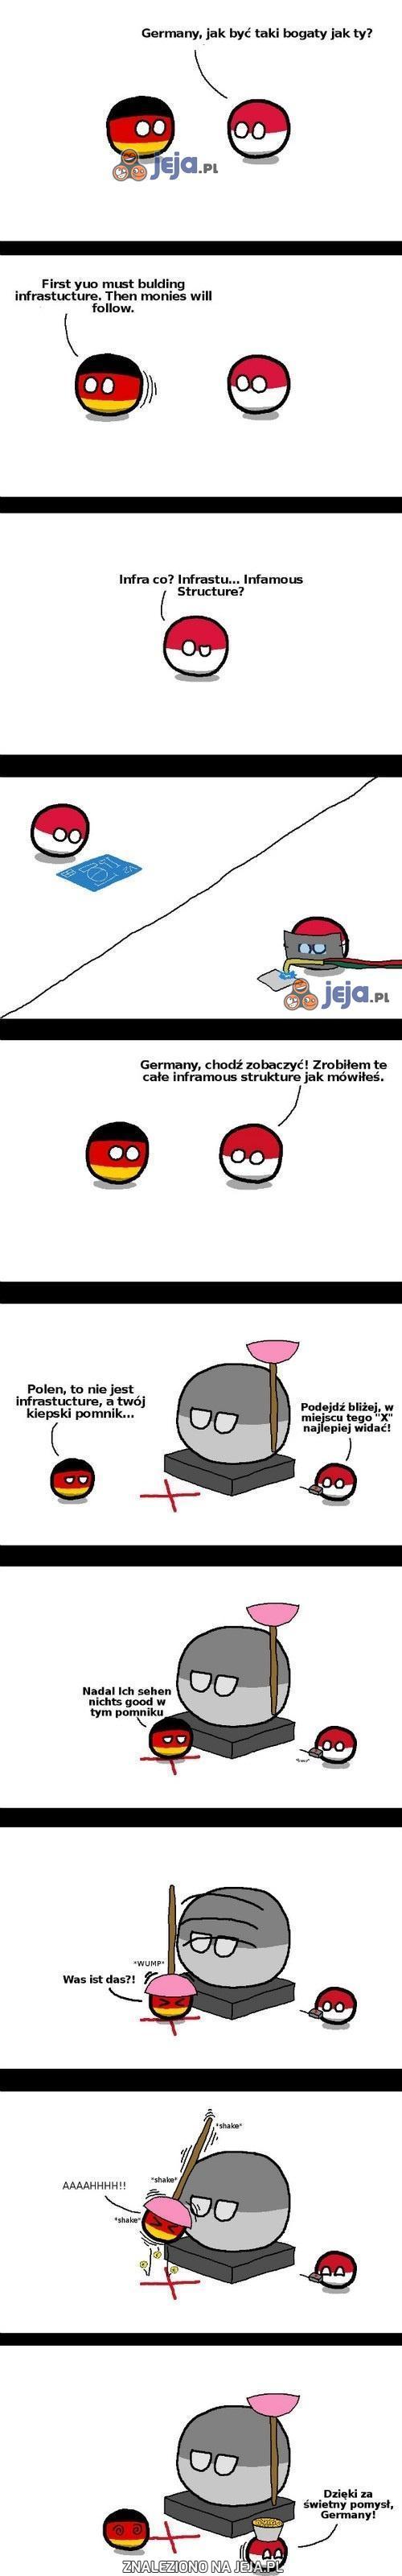 Polska to ma pomysły